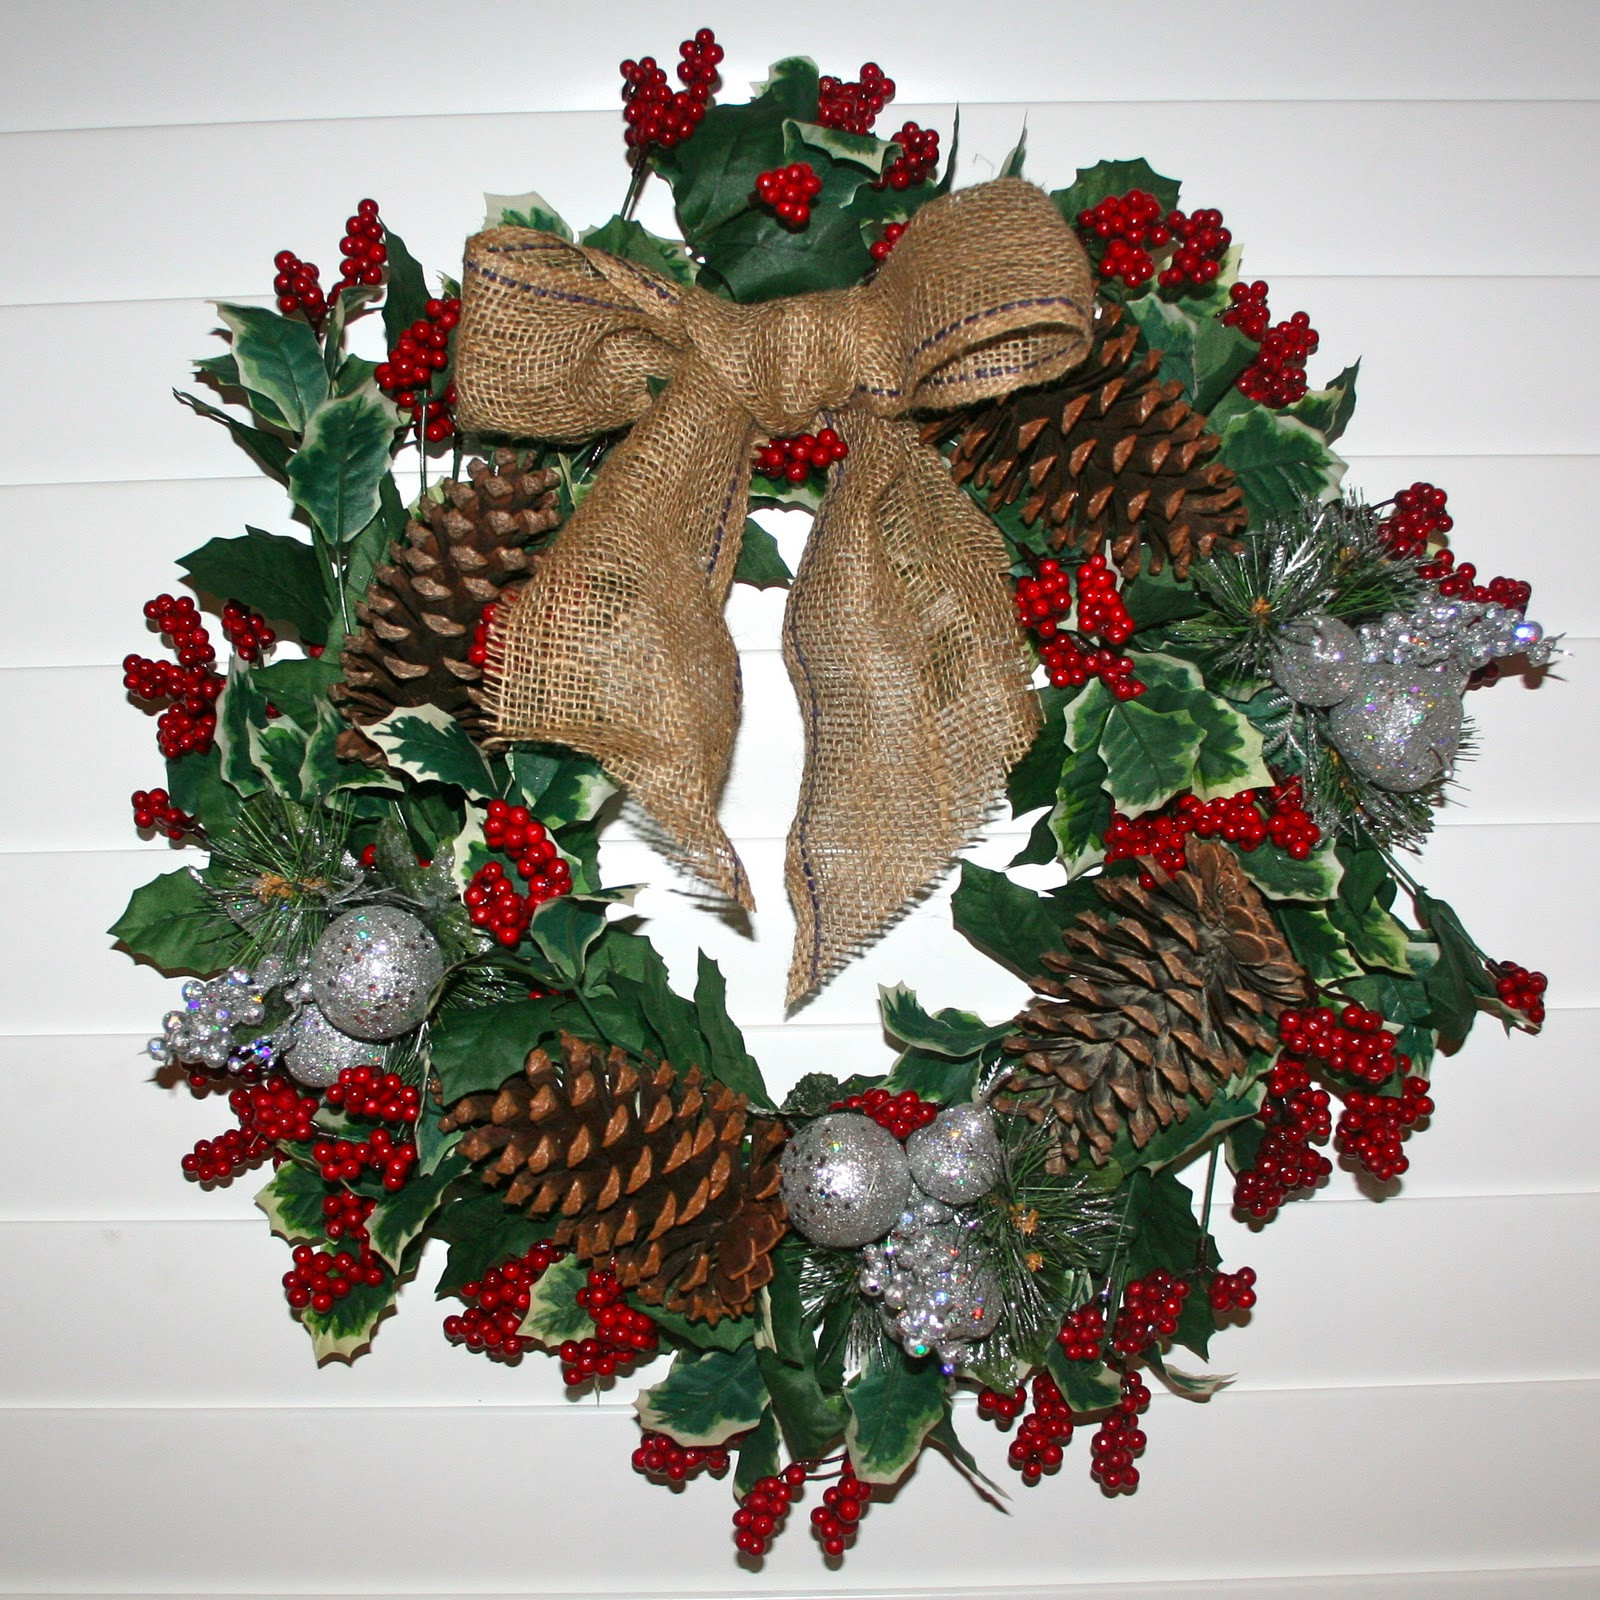 DIY Christmas Wreath
 Divine DIY Christmas Wreath